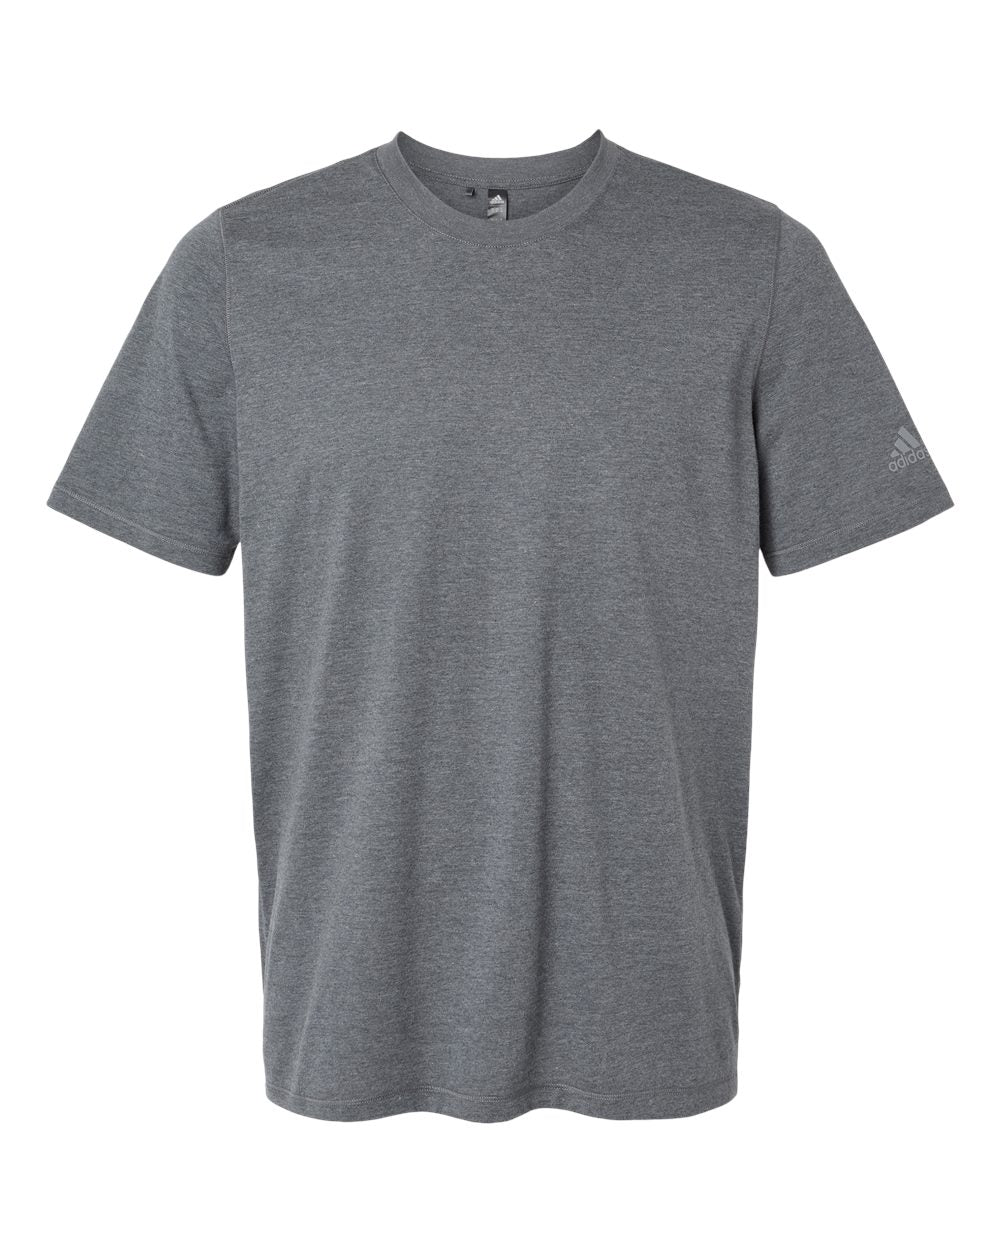 Blended Men's T-Shirt - Adidas A556